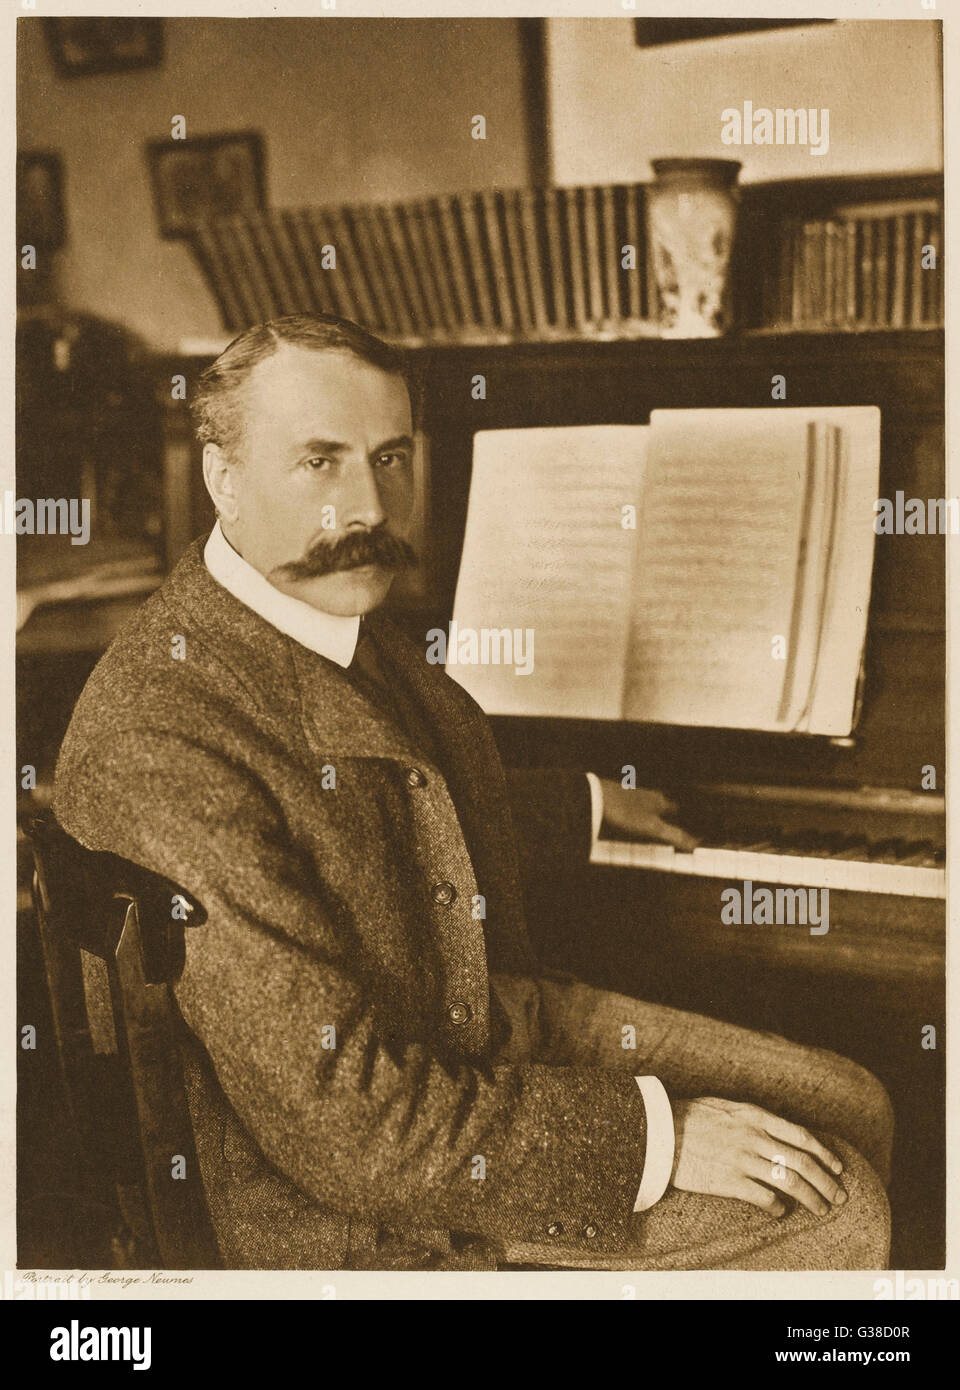 EDWARD ELGAR compositeur au piano, c1911. Date : 1857 - 1934 Banque D'Images